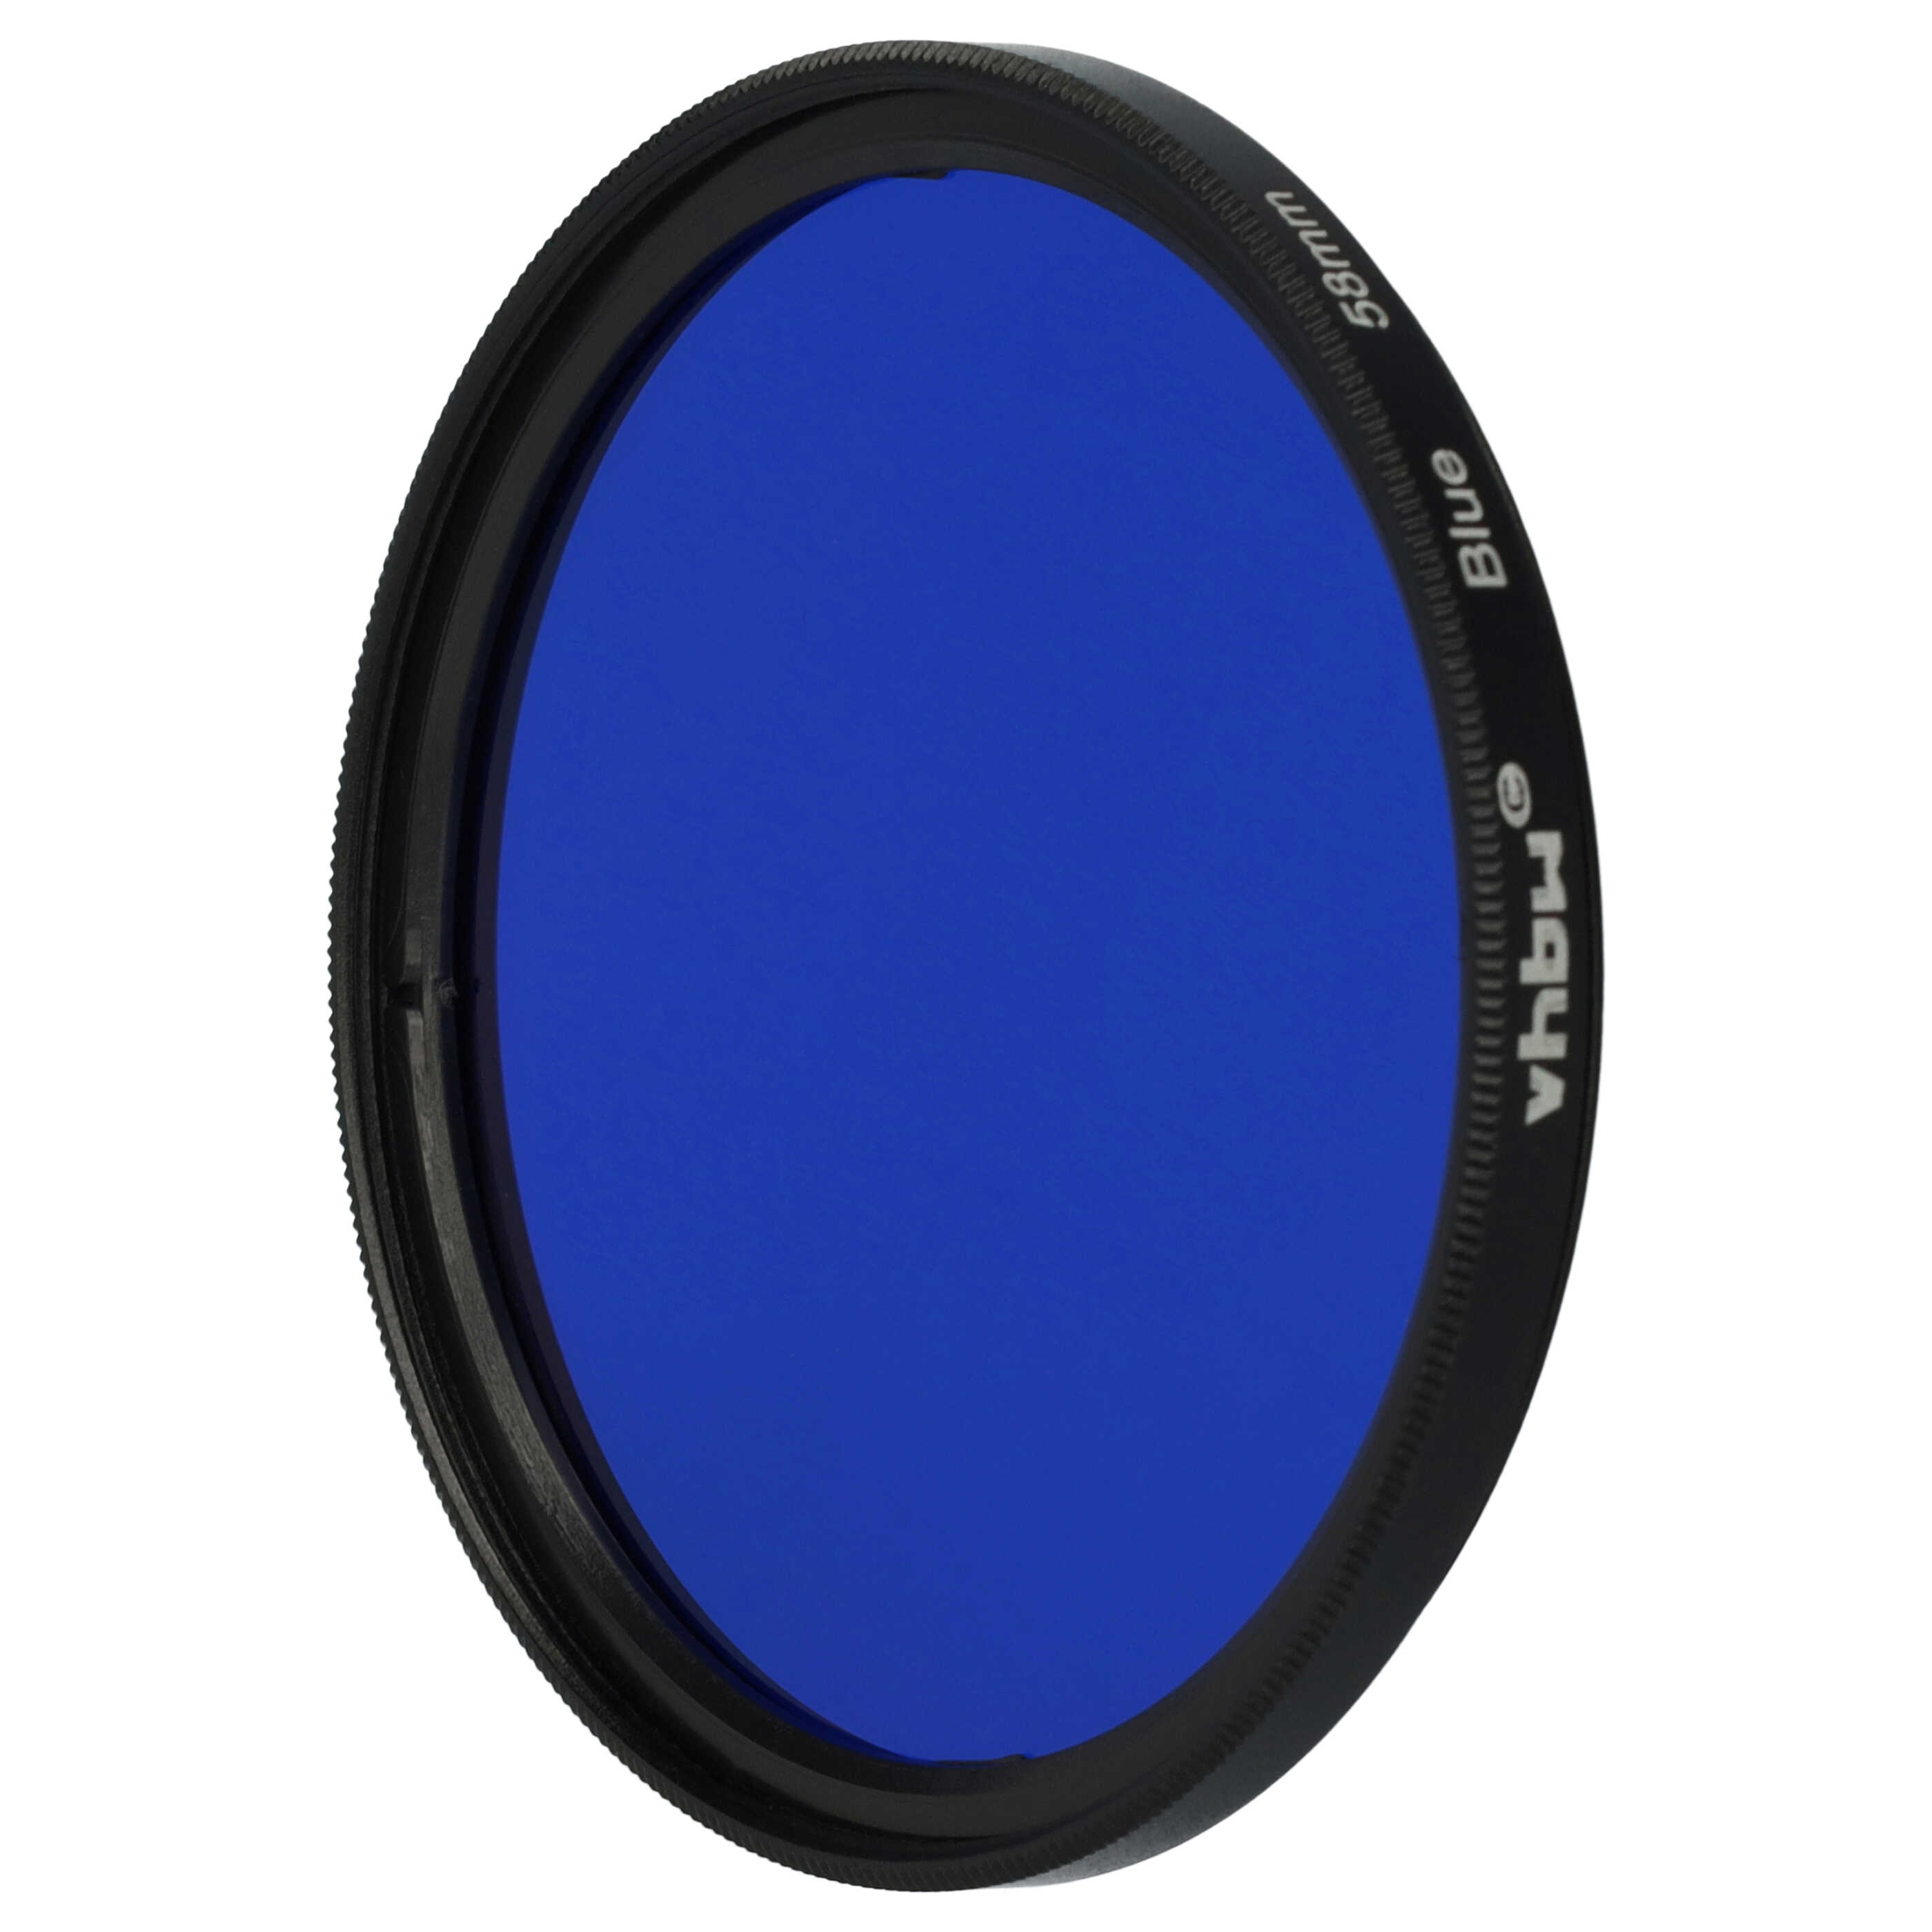 Farbfilter blau passend für Kamera Objektive mit 58 mm Filtergewinde - Blaufilter